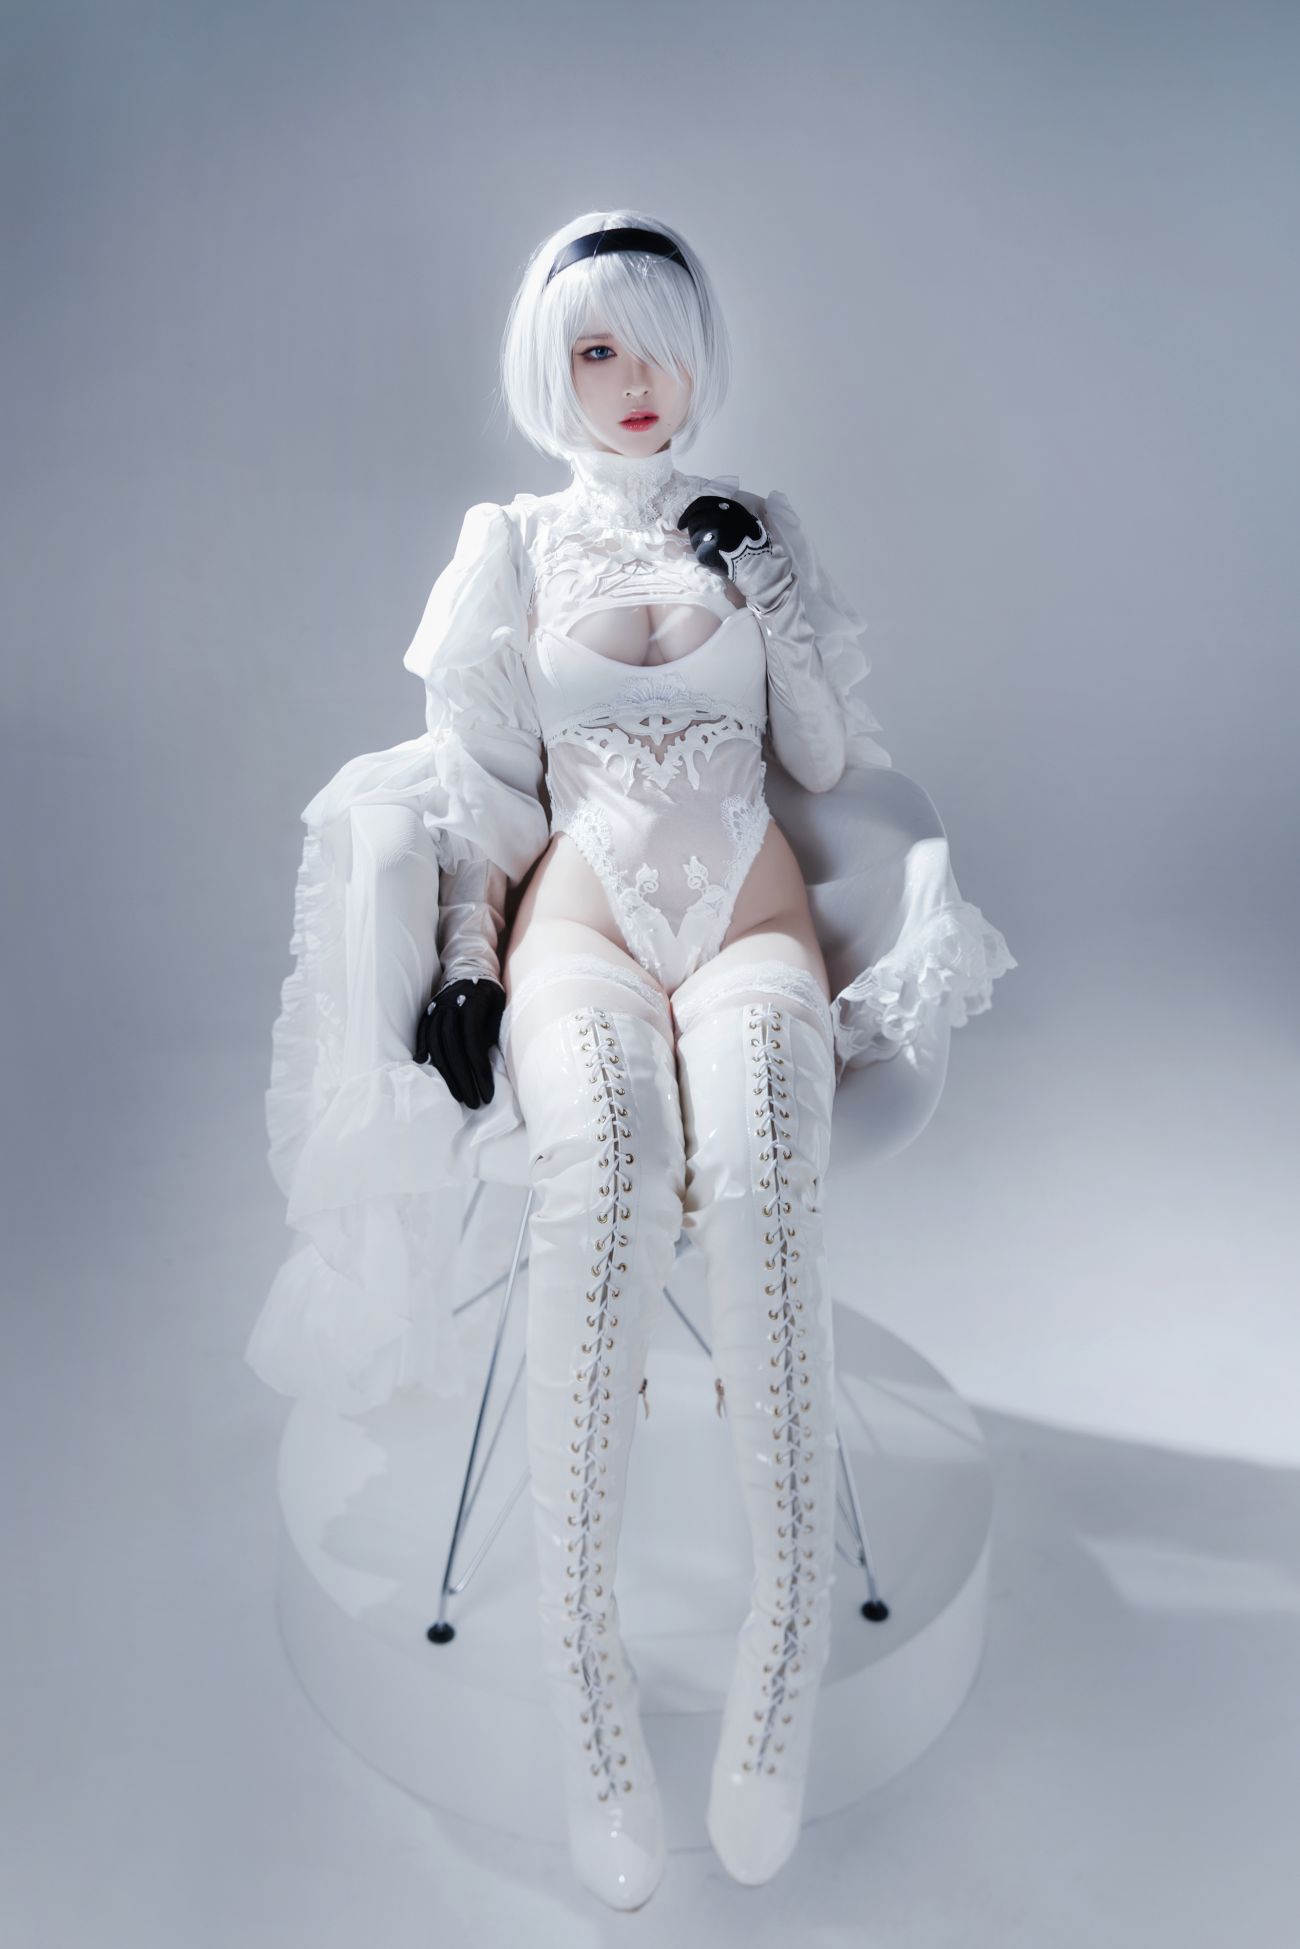 微博美少女半半子Cosplay性感写真Automataヨルハ二号B型 白いドレス (25)